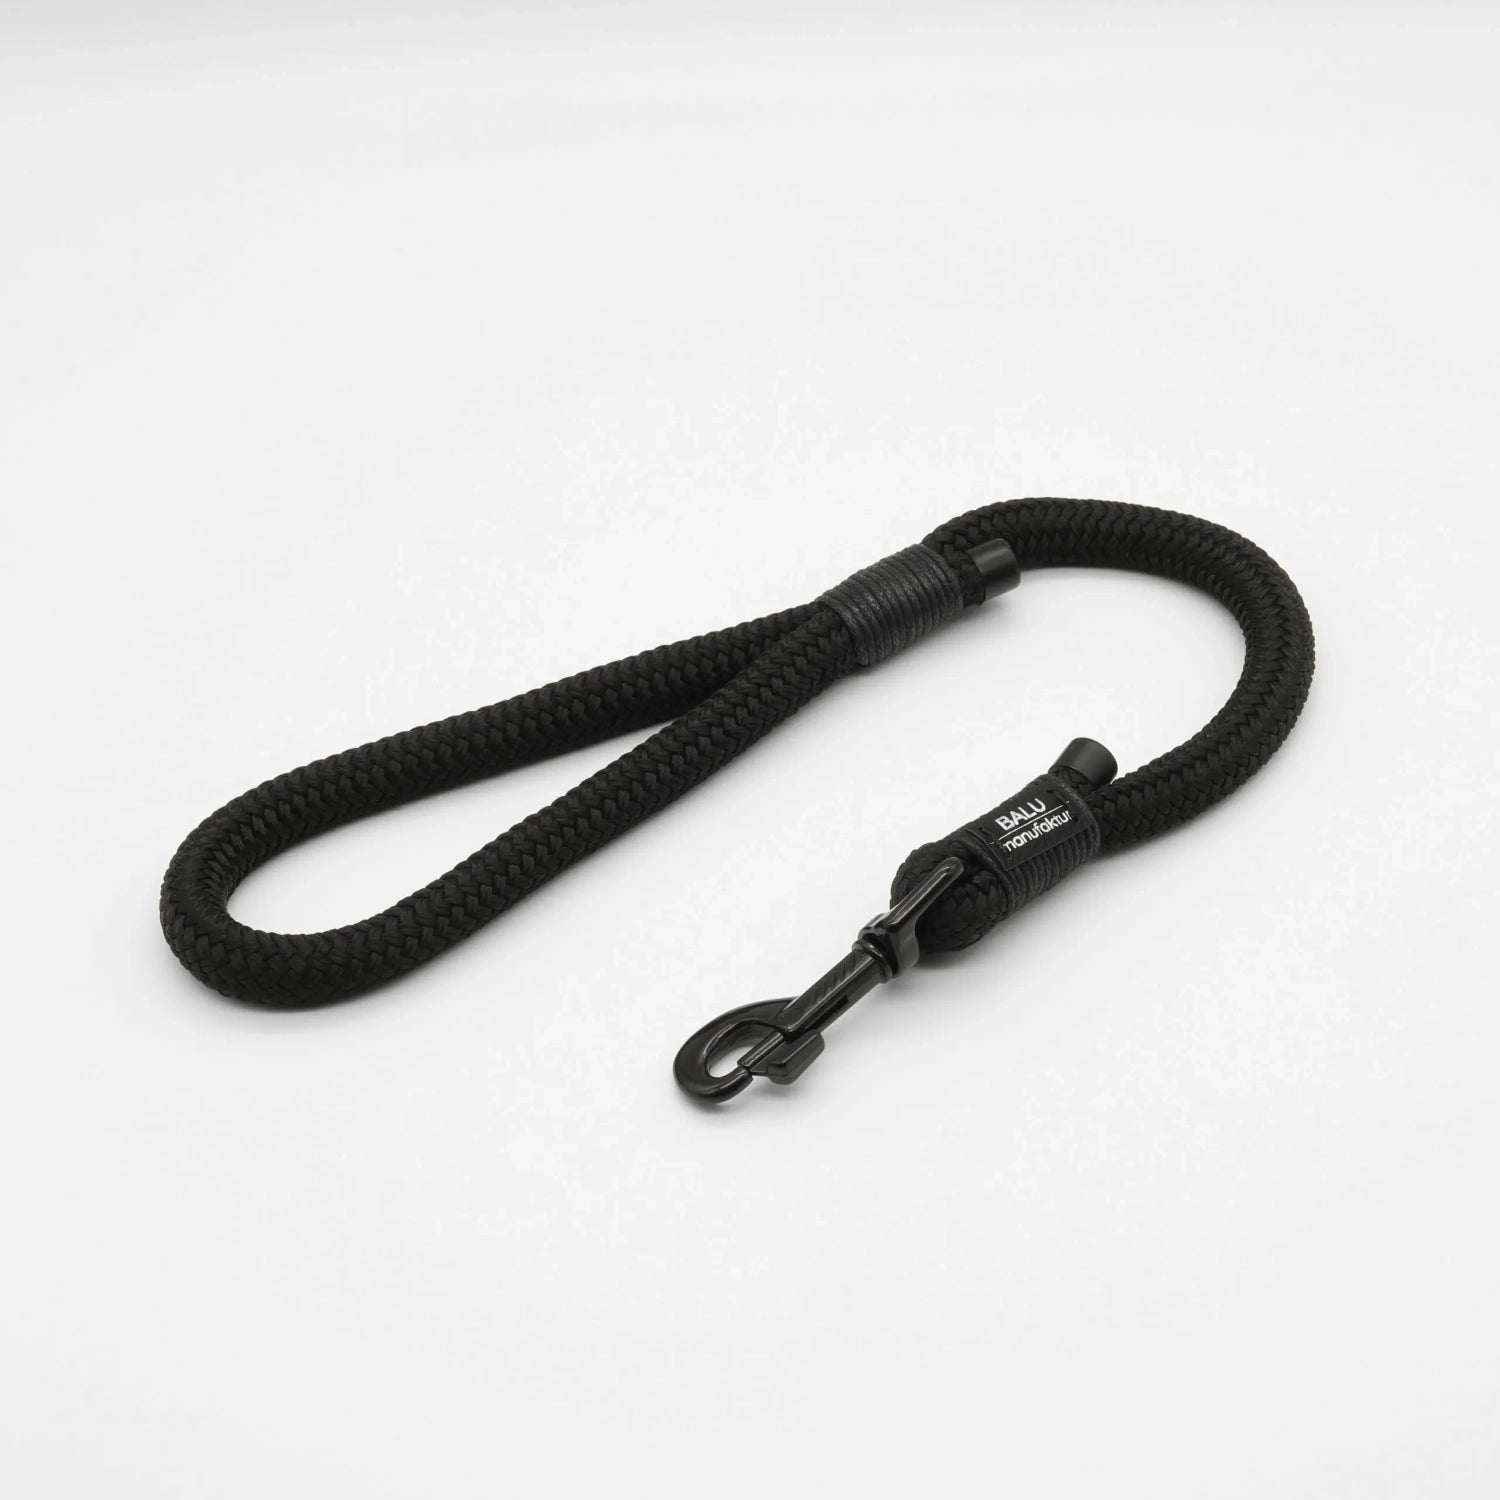 Kurzführleine aus Seil in schwarz mit schwarzen Metallelementen 50cm Länge